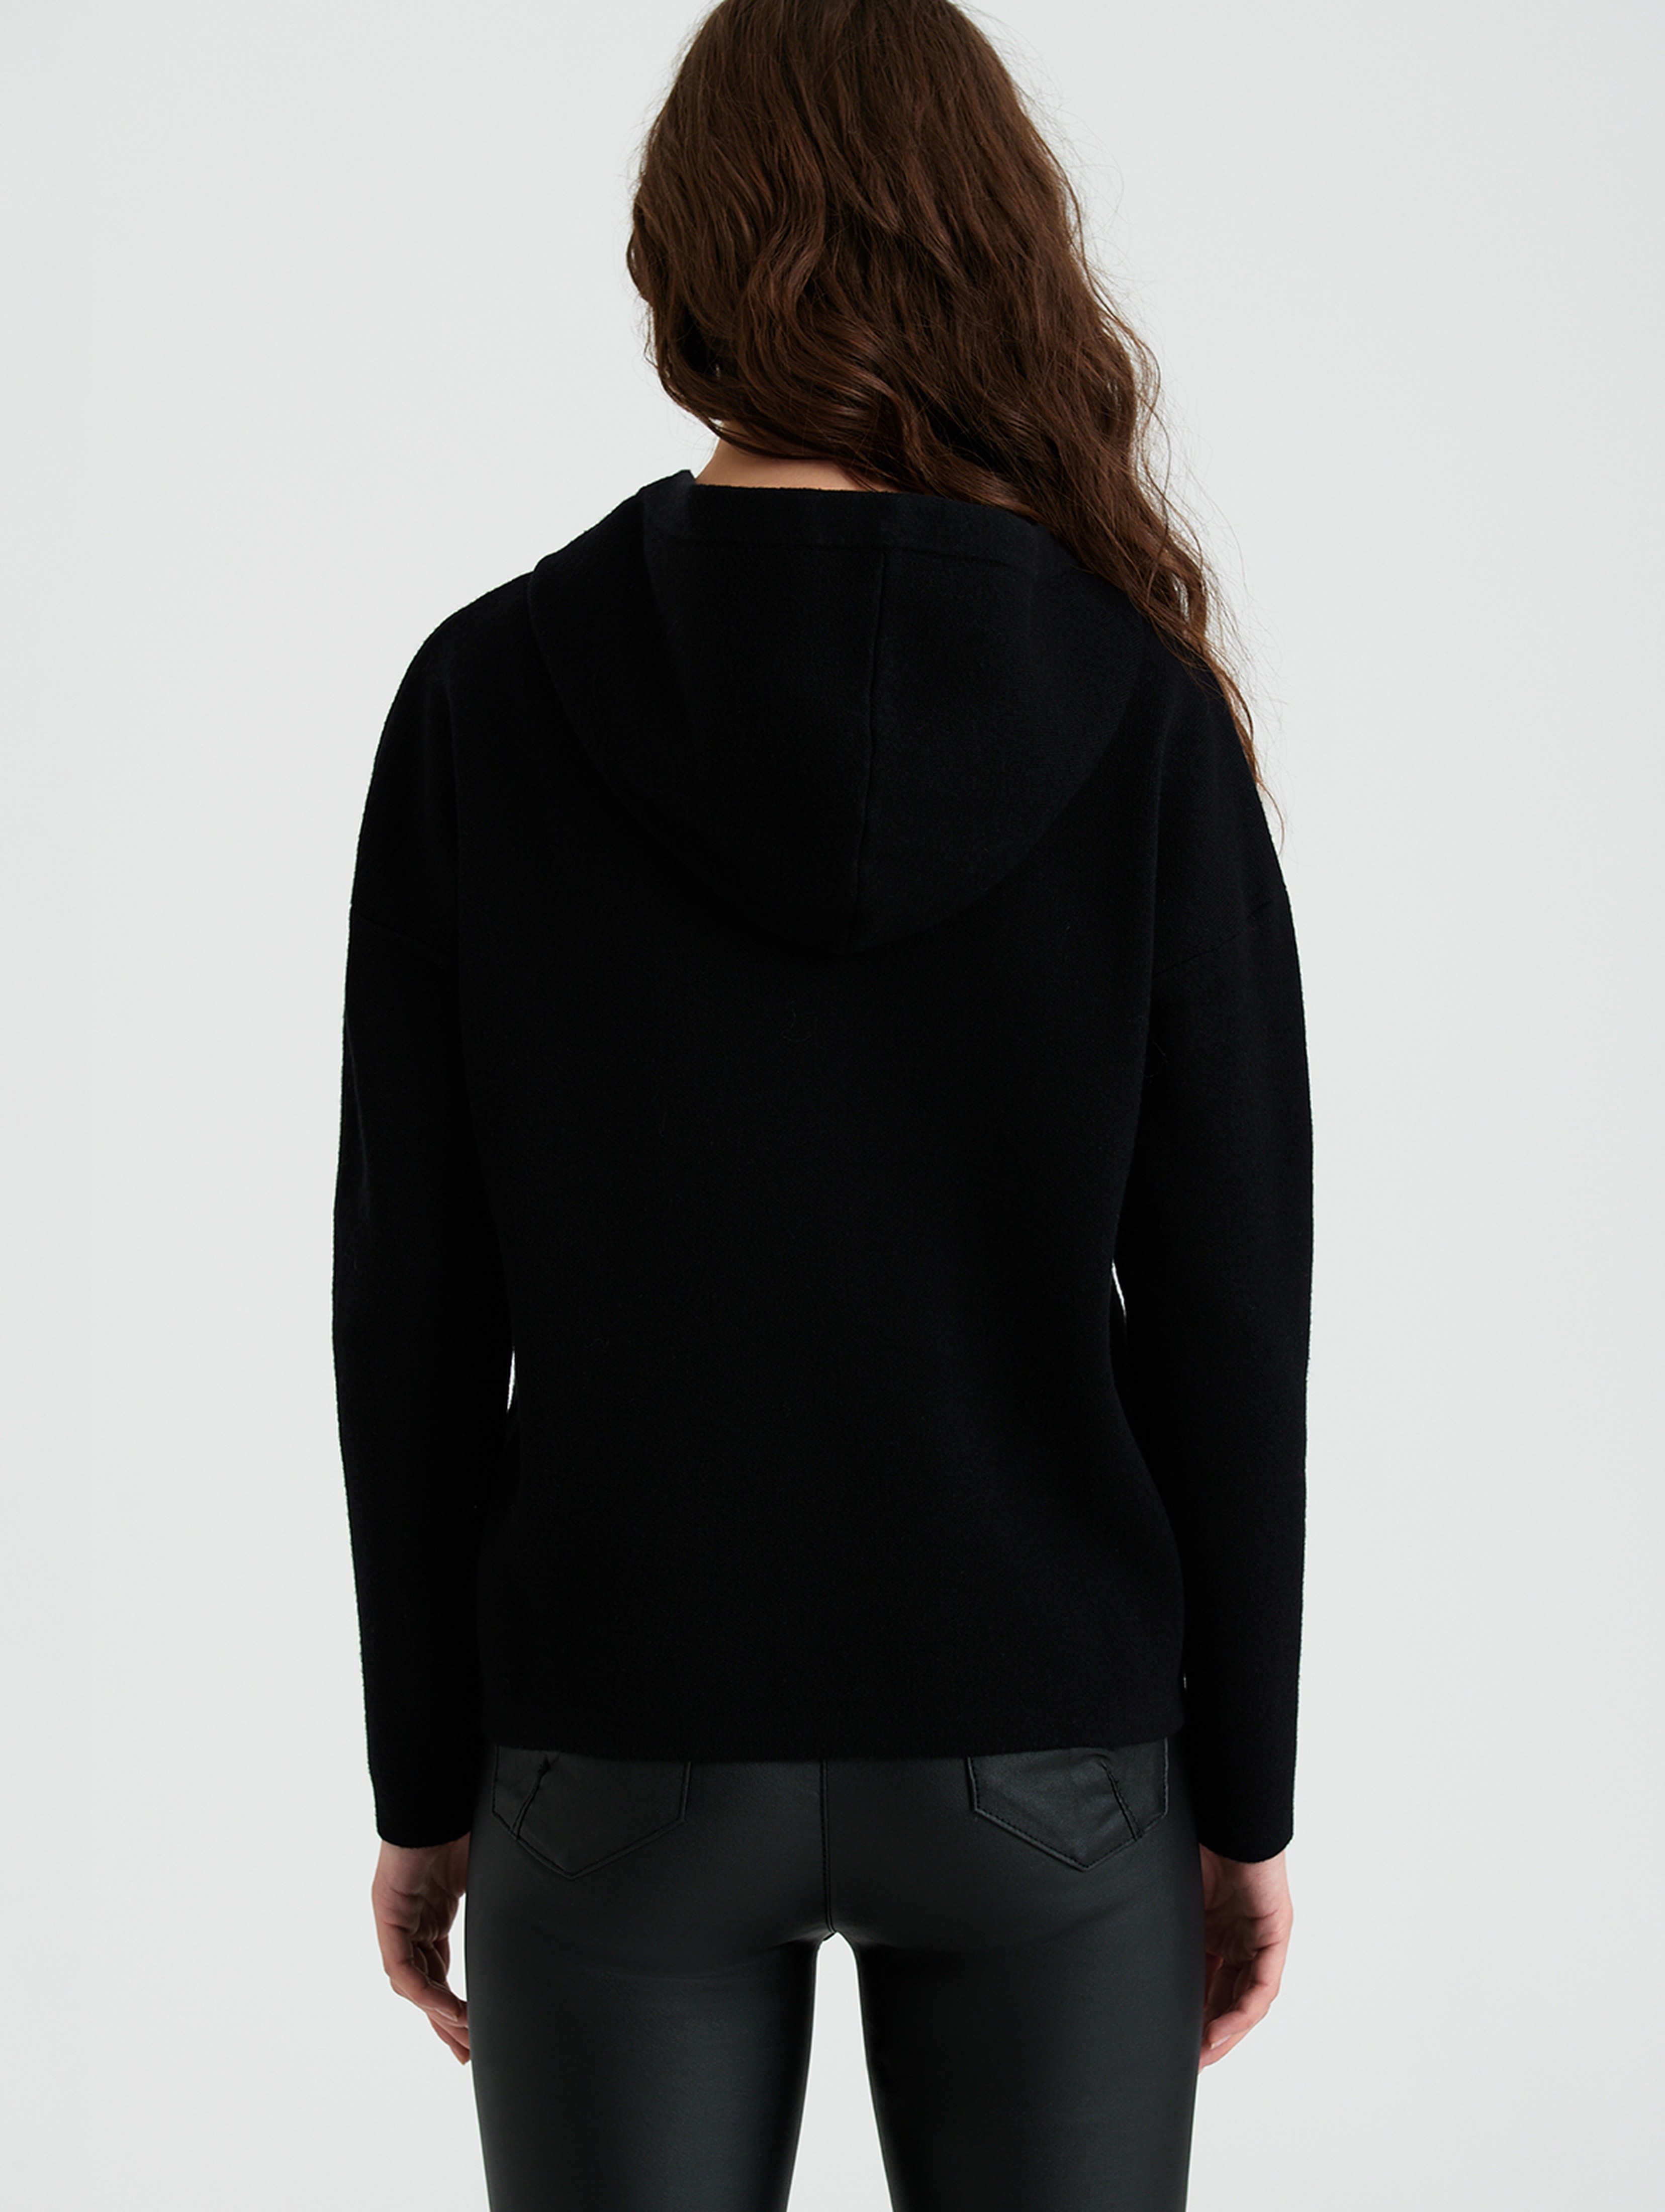 Czarny sweter damski z kapturem - Greenpoint